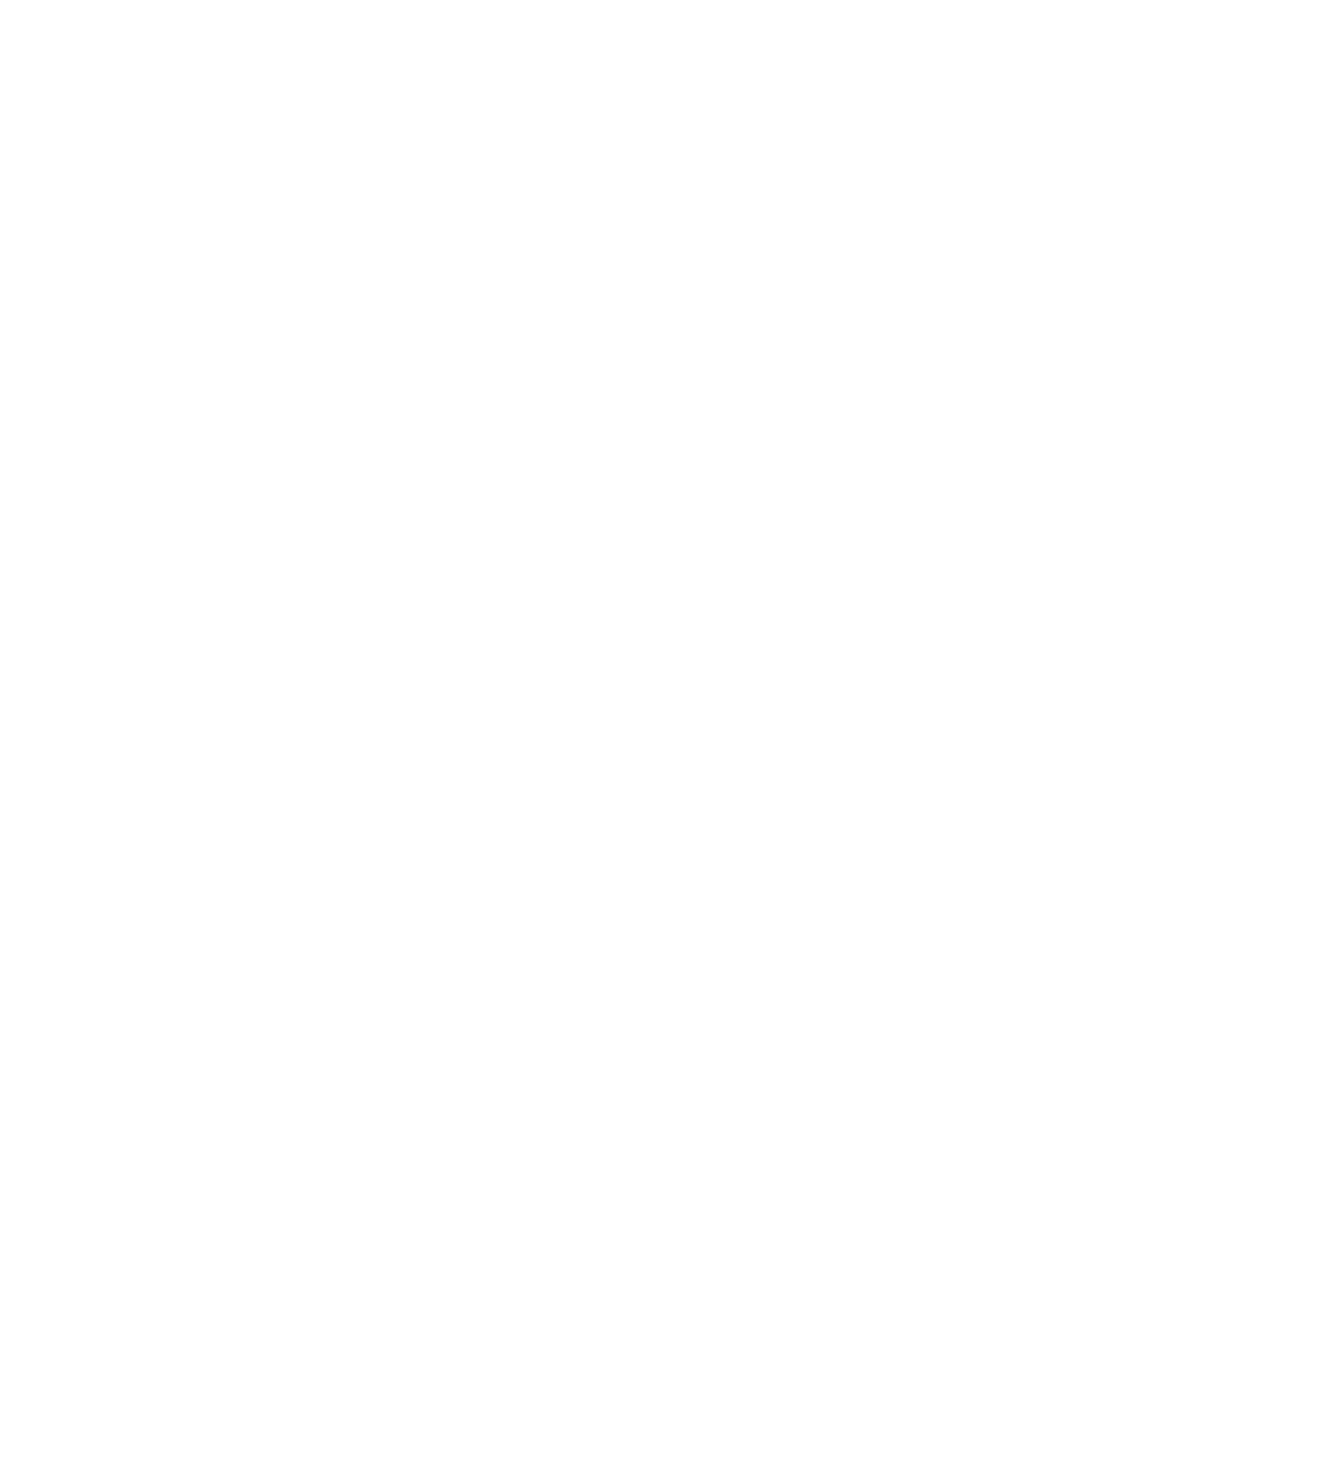 Just a Bill